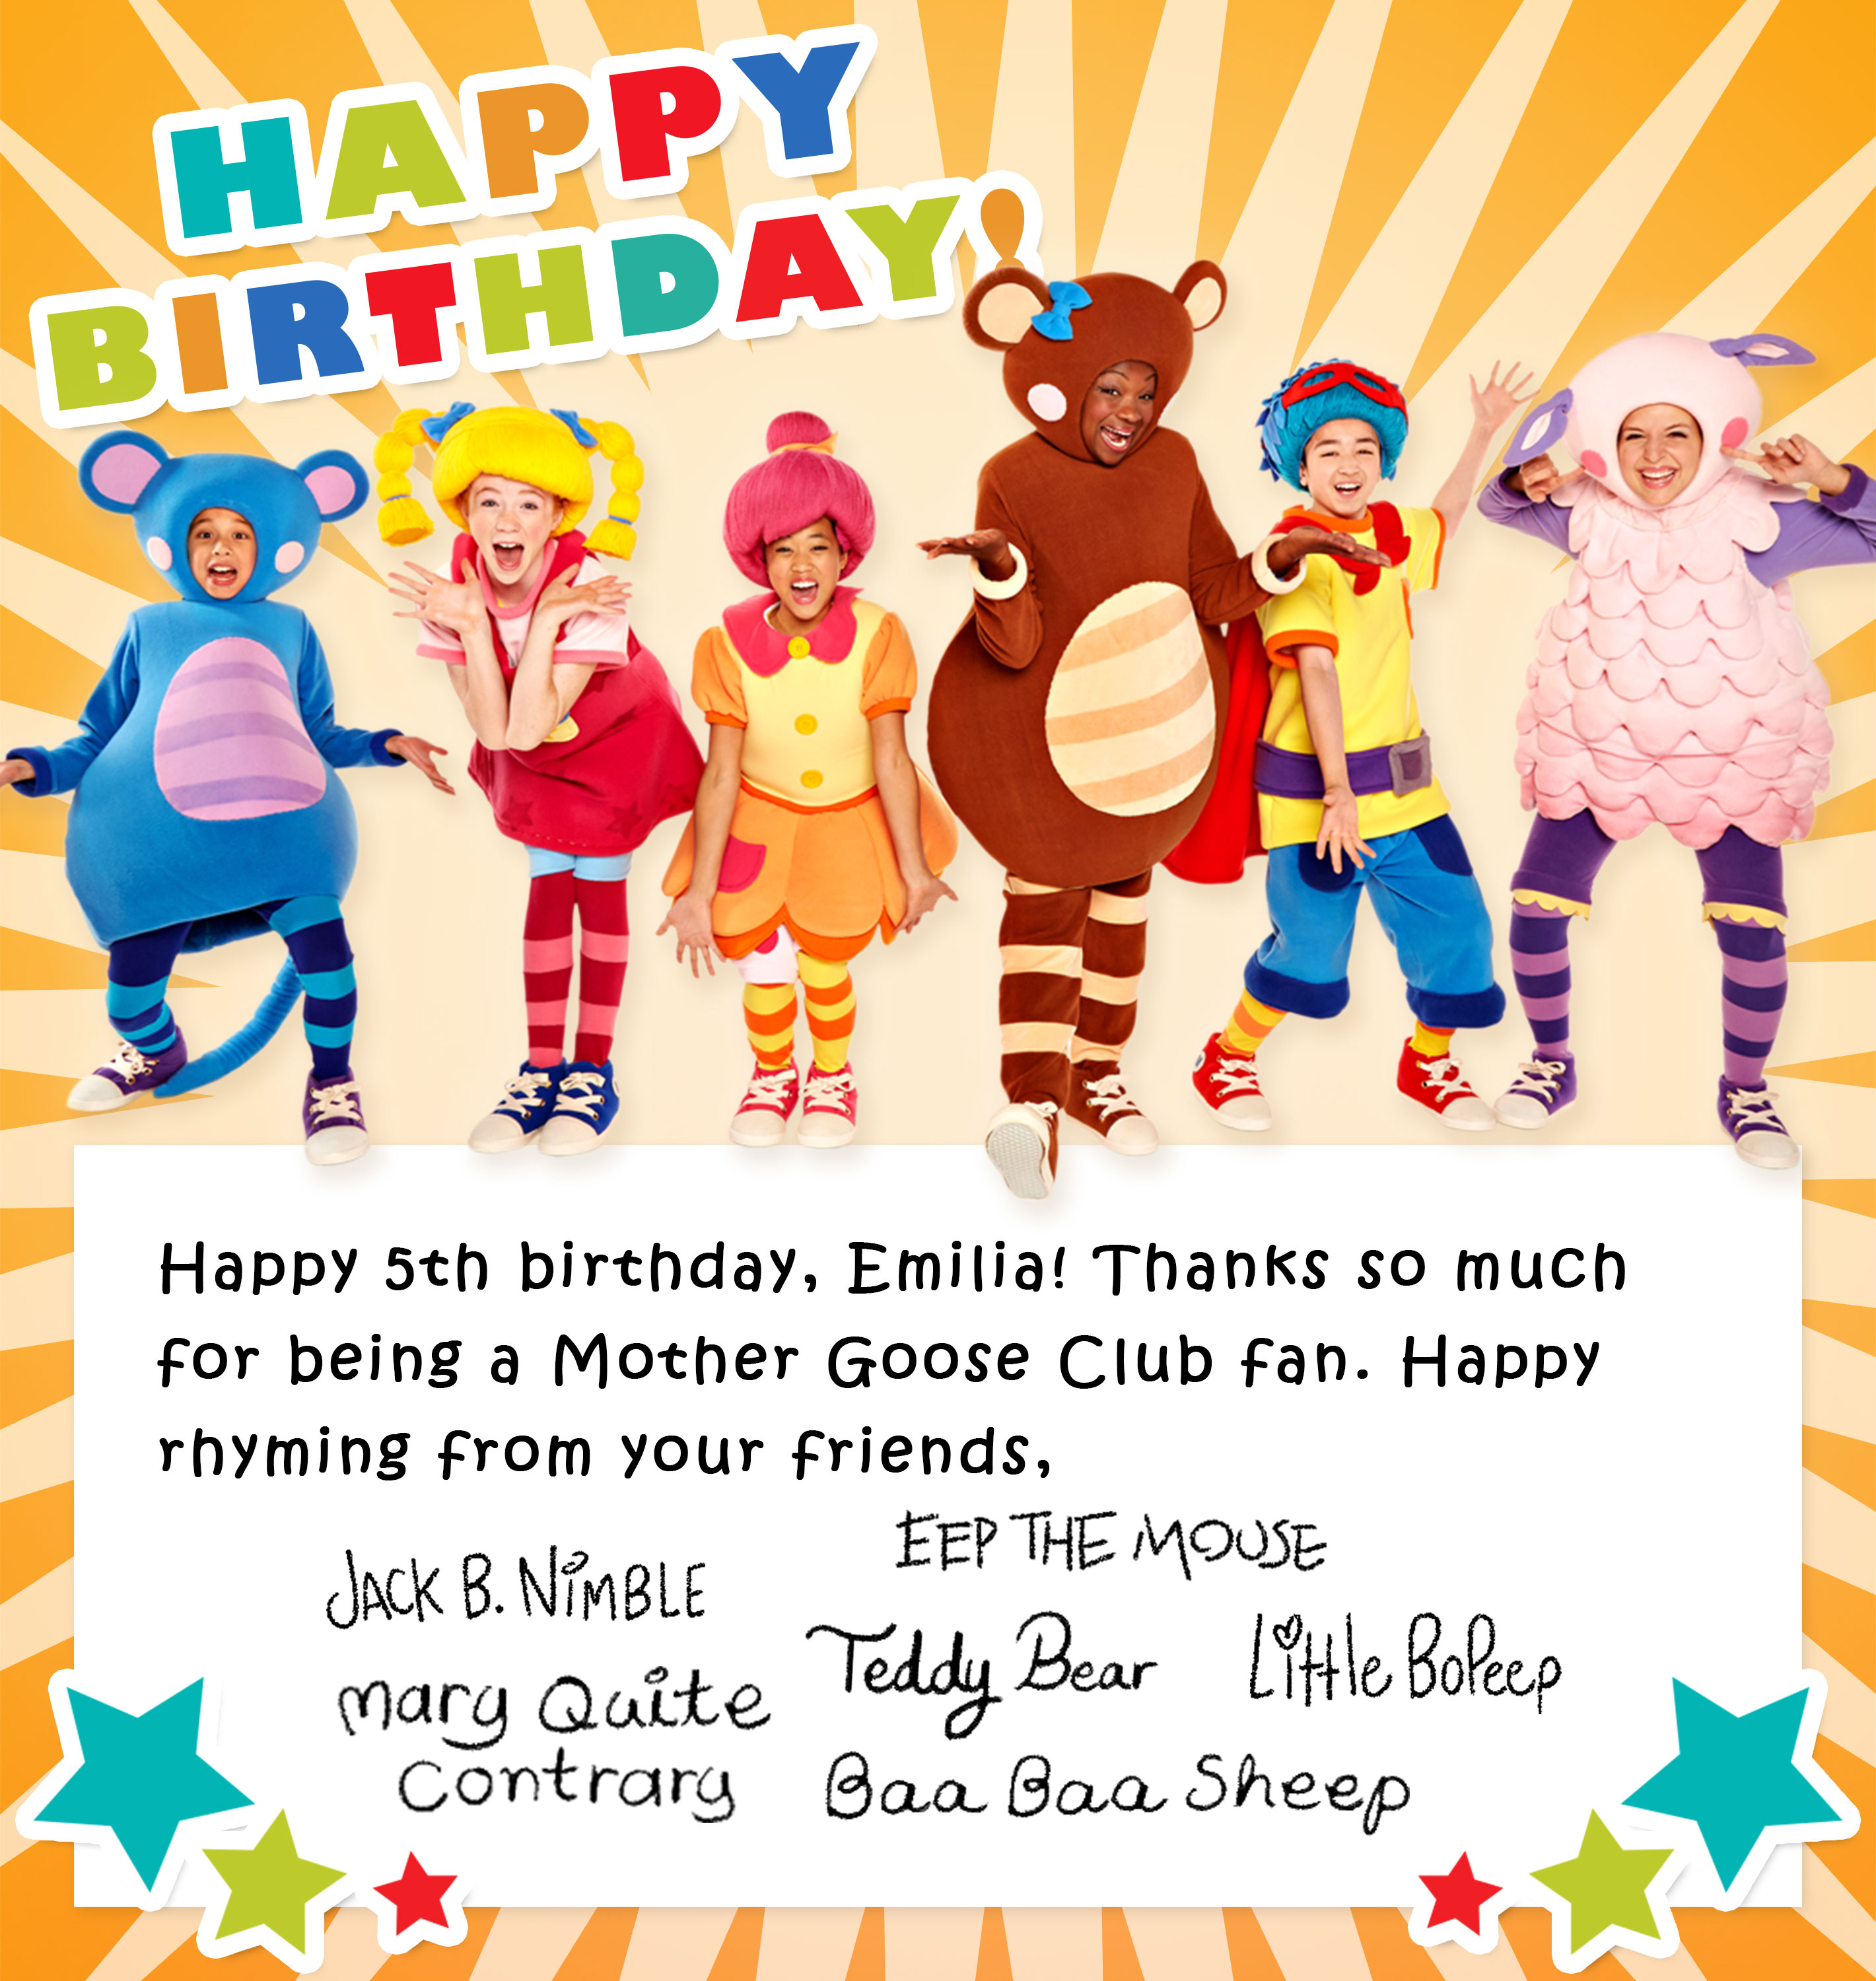 Happy Birthday Emilia card